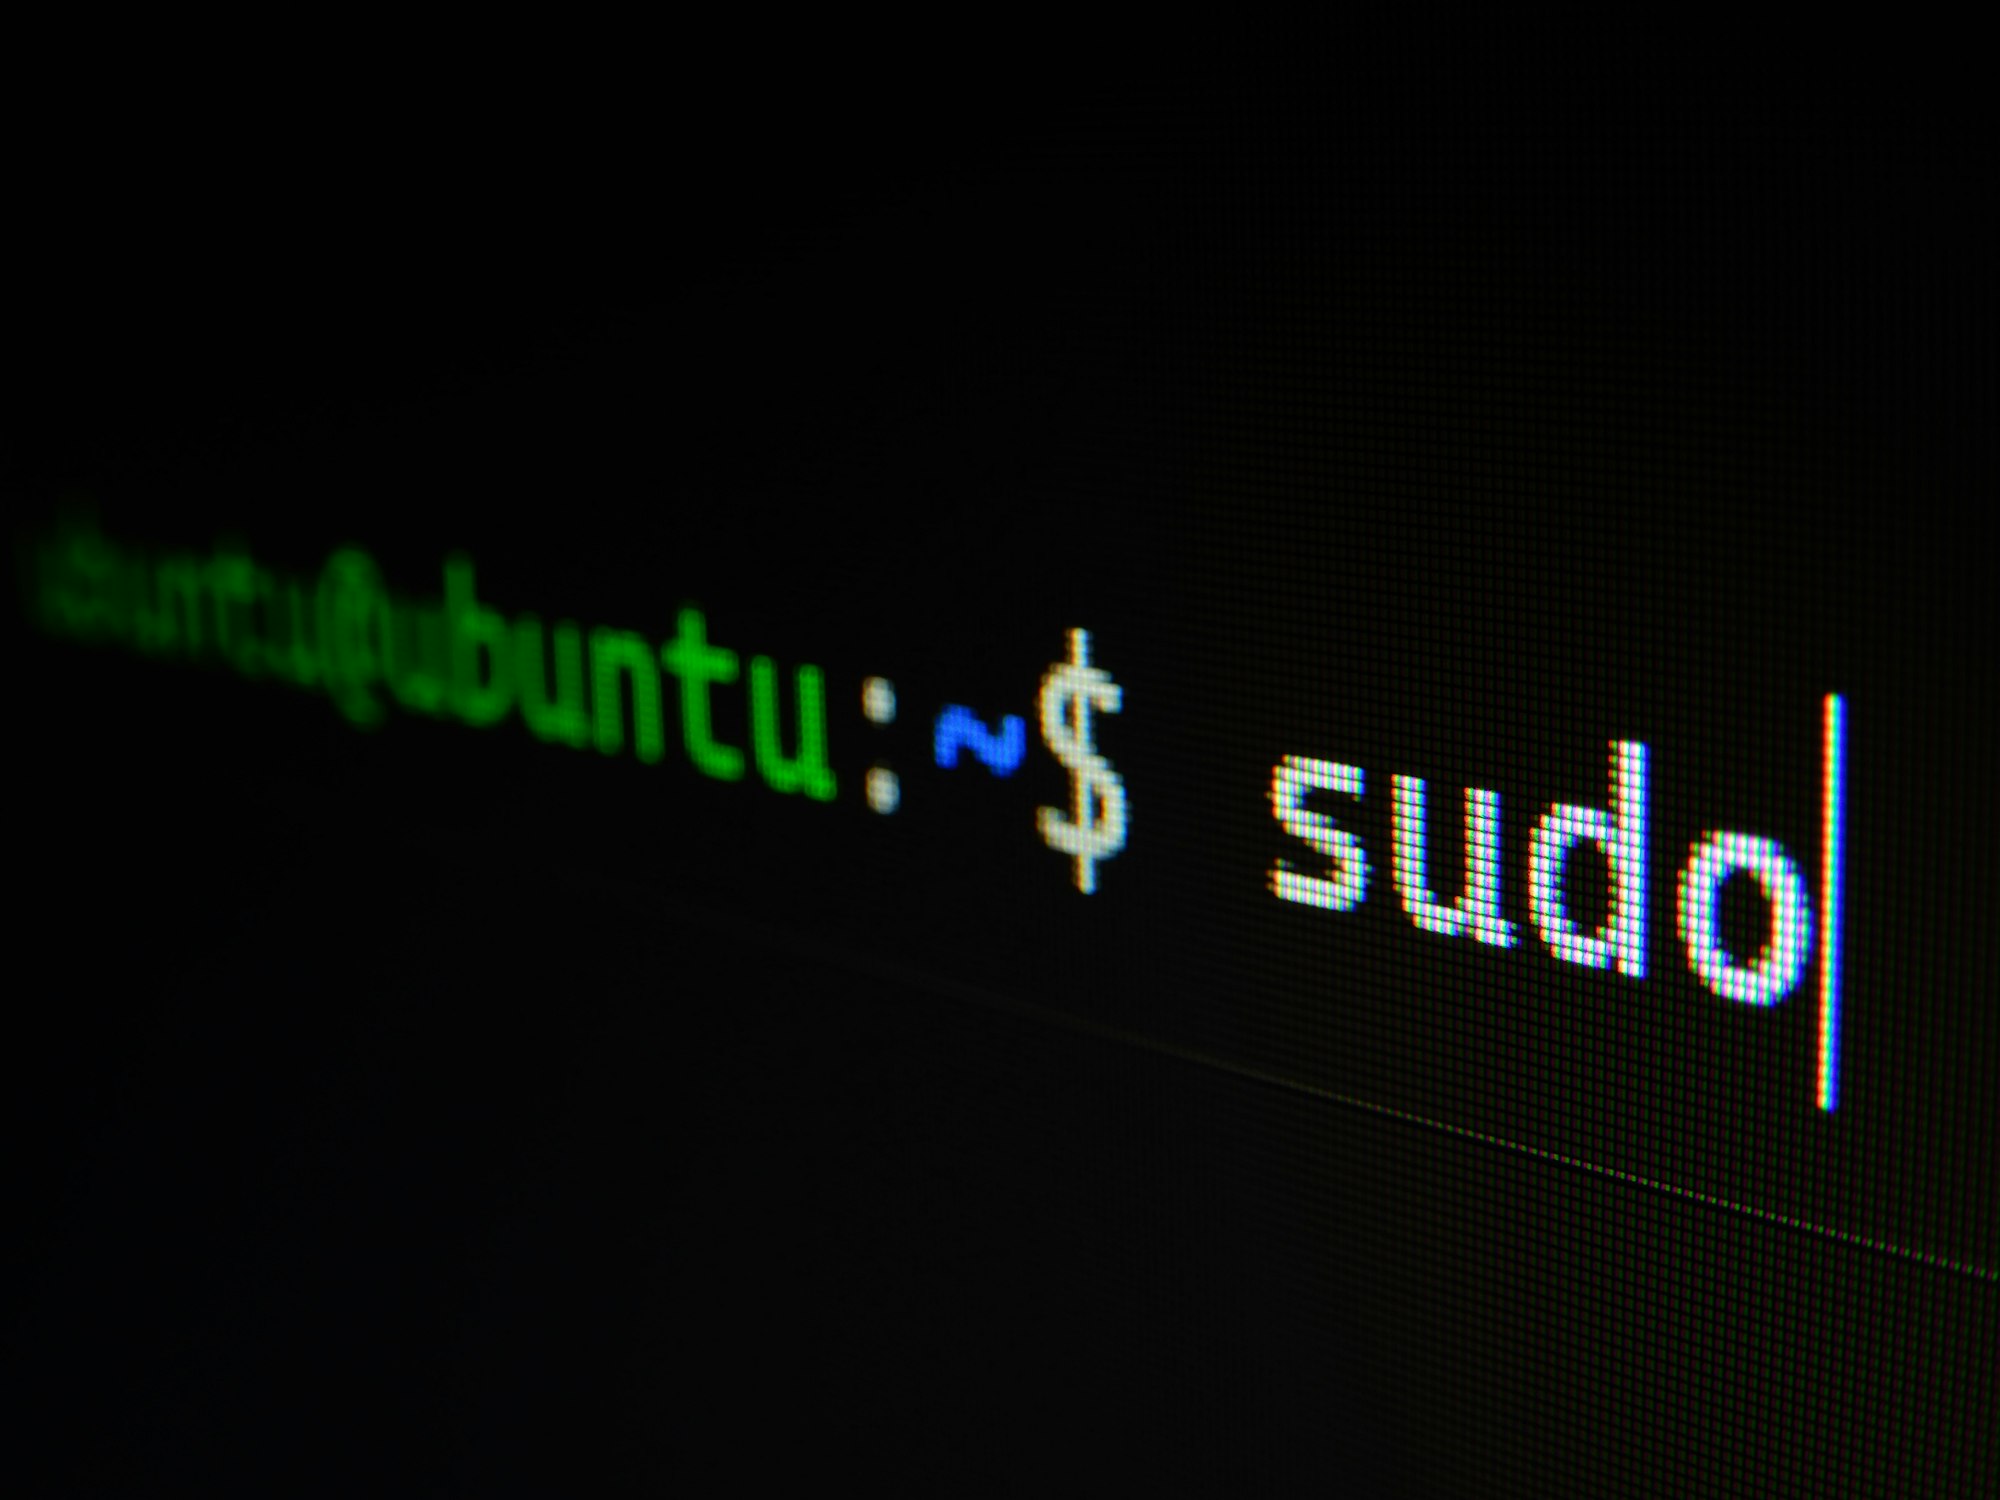 Reindirizzare messaggi di errore (STDERR) verso lo Standard Output (STDOUTPUT)